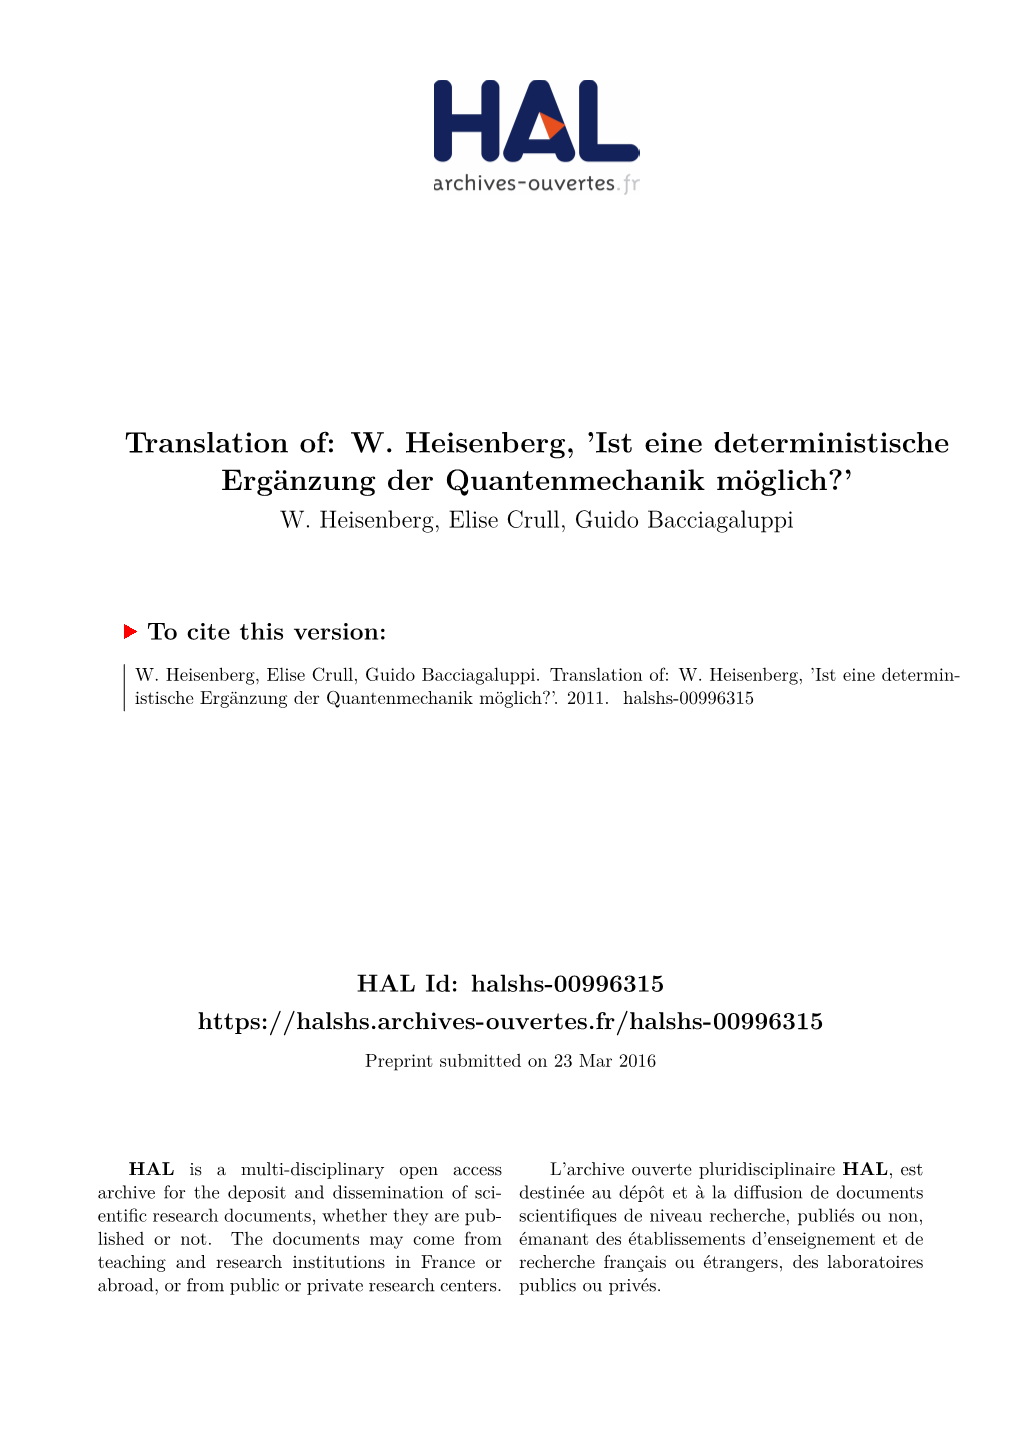 Translation Of: W. Heisenberg, 'Ist Eine Deterministische Ergänzung Der